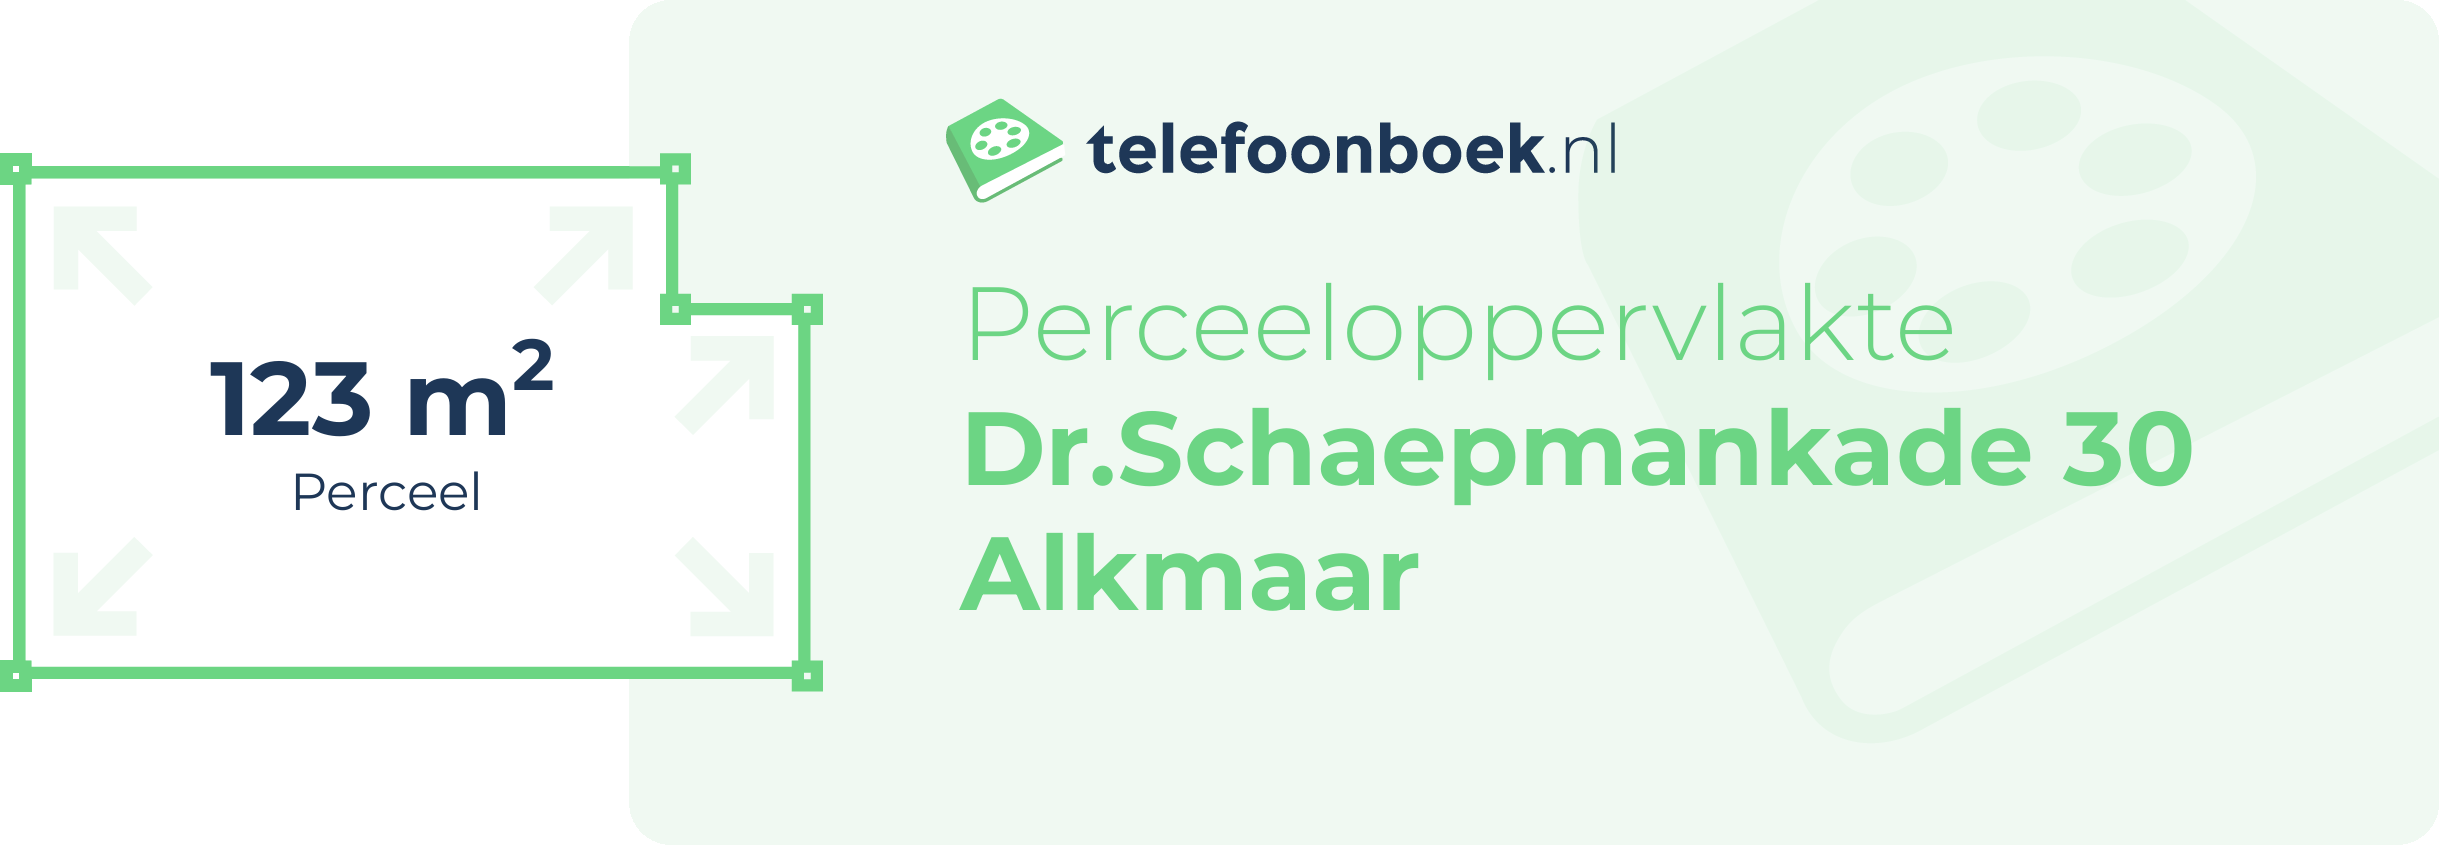 Perceeloppervlakte Dr.Schaepmankade 30 Alkmaar